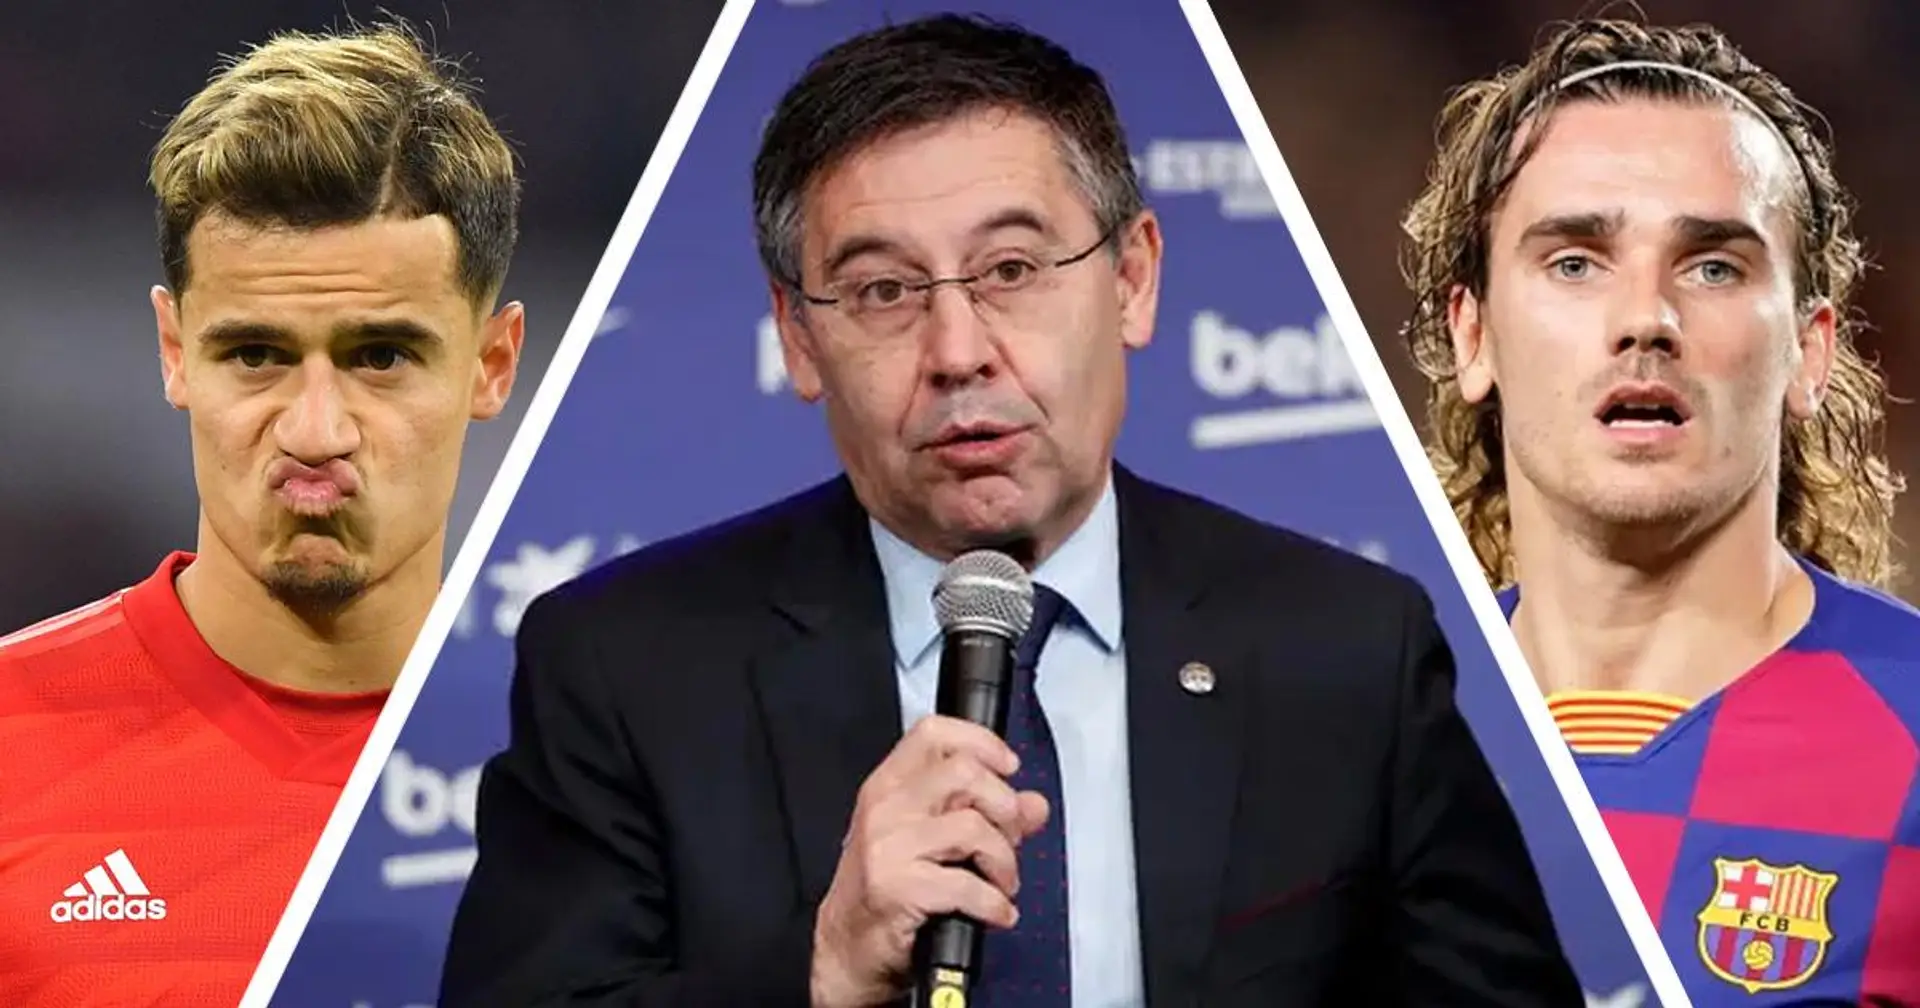 Comment le Barça a jeté 800 millions d'euros au cours des cinq dernières années - explication en 30 secondes